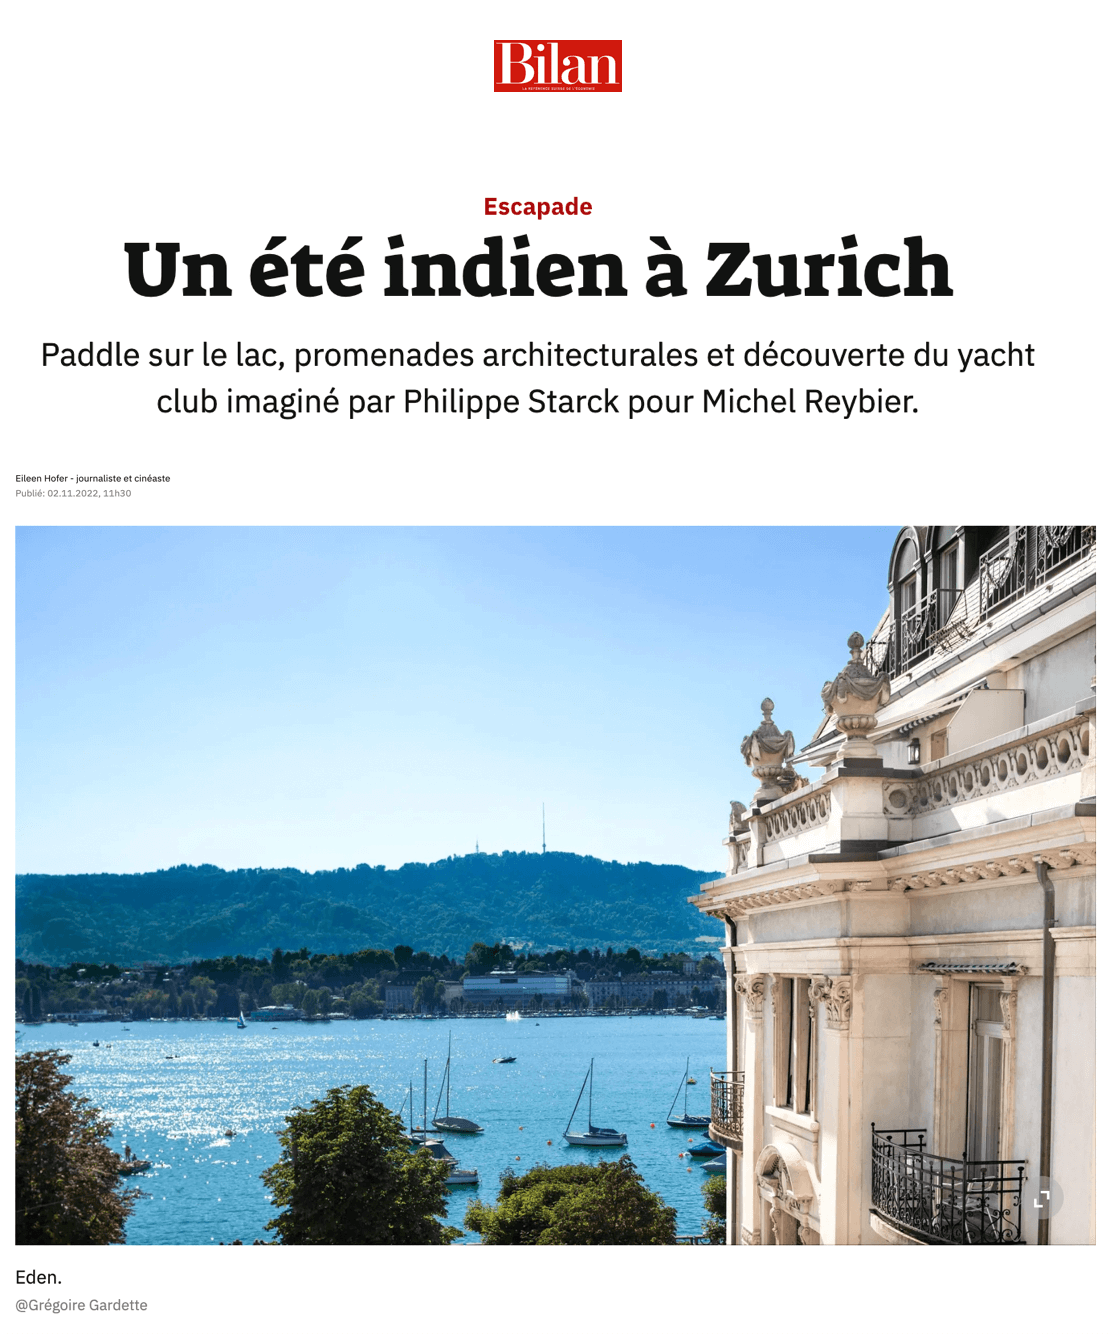 An Indian summer in Zurich